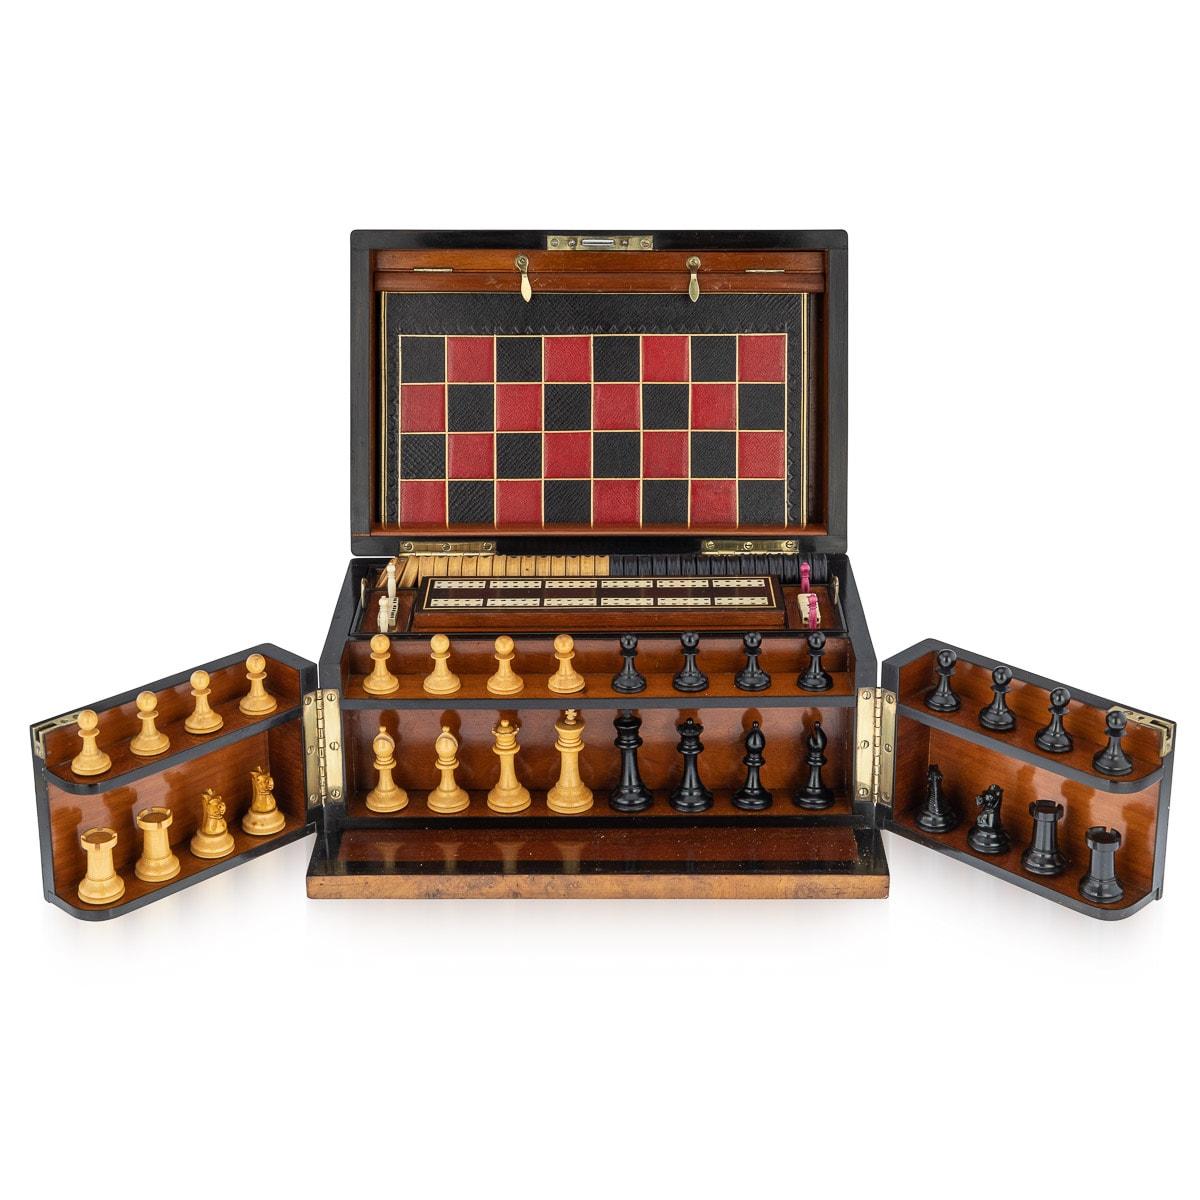 Ancienne boîte de jeux victorienne en noyer de la fin du 19e siècle, comprenant un jeu d'échecs, des dames, des dominos, des dés, un plateau de cribbage avec des marqueurs, des planches de jeux reliées en cuir, des cartes à jouer, des pions de